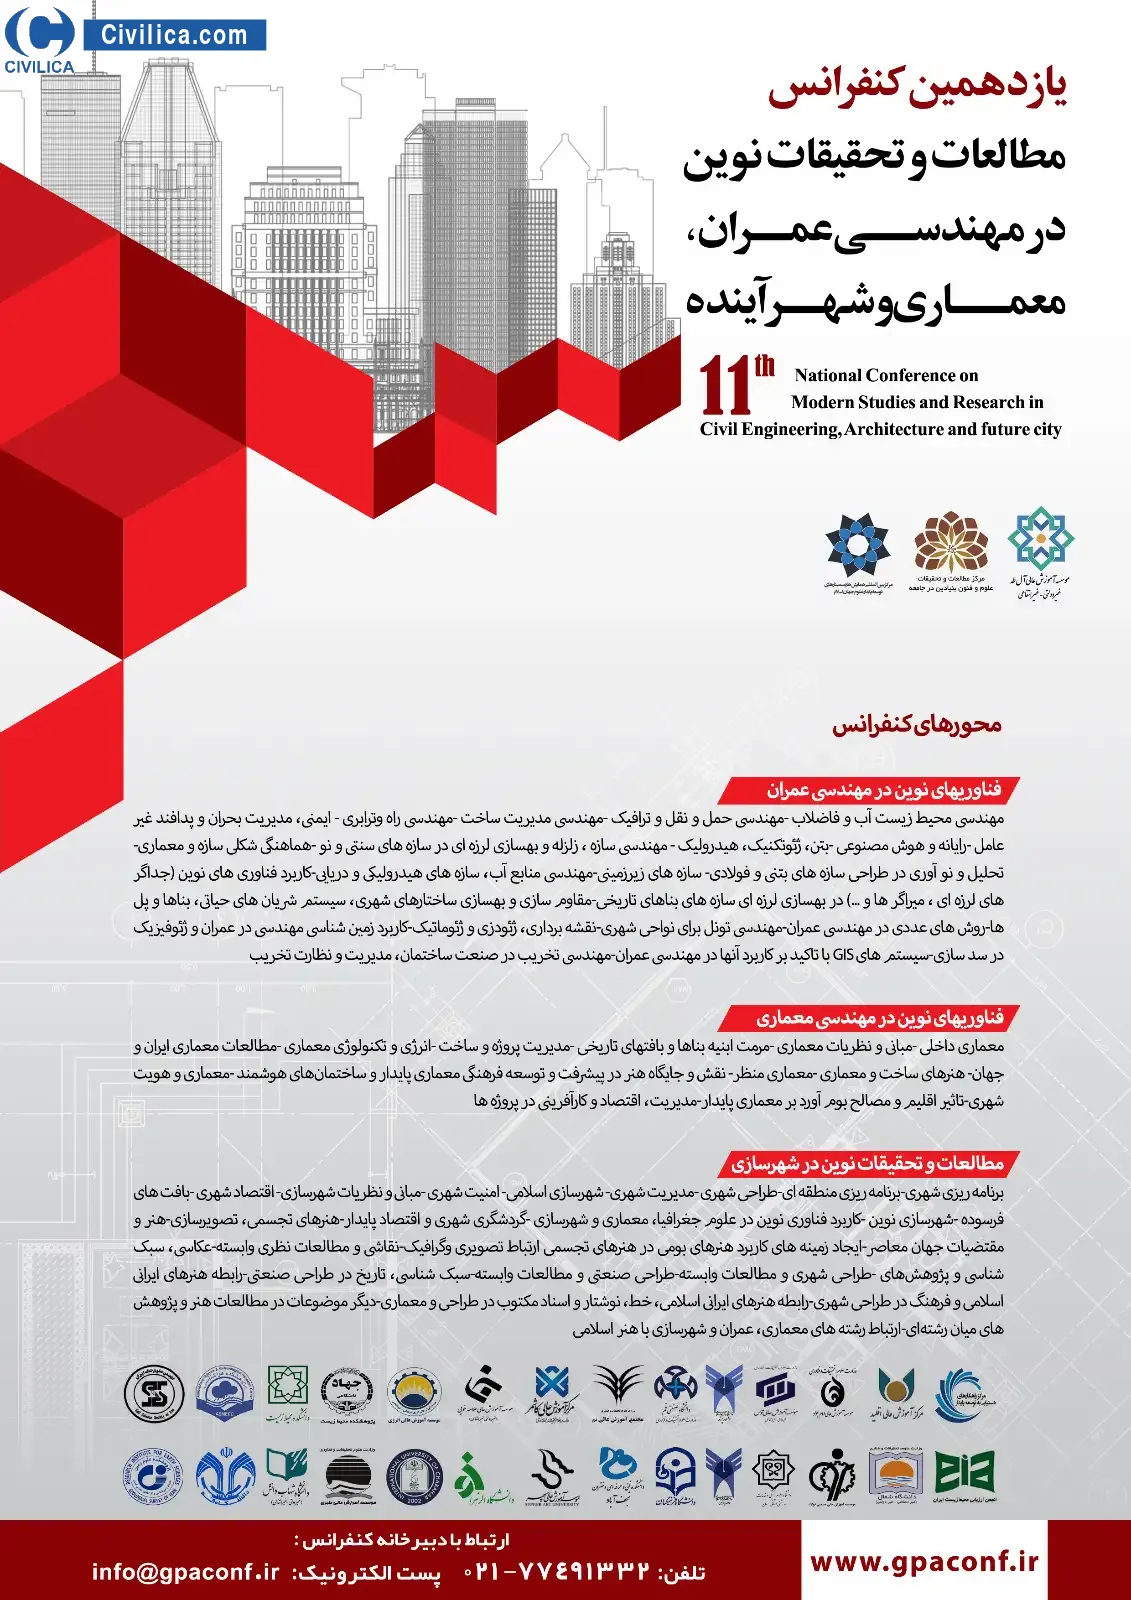 یازدهمین کنفرانس مطالعات و تحقیقات نوین در مهندسی عمران، معماری و شهرآینده